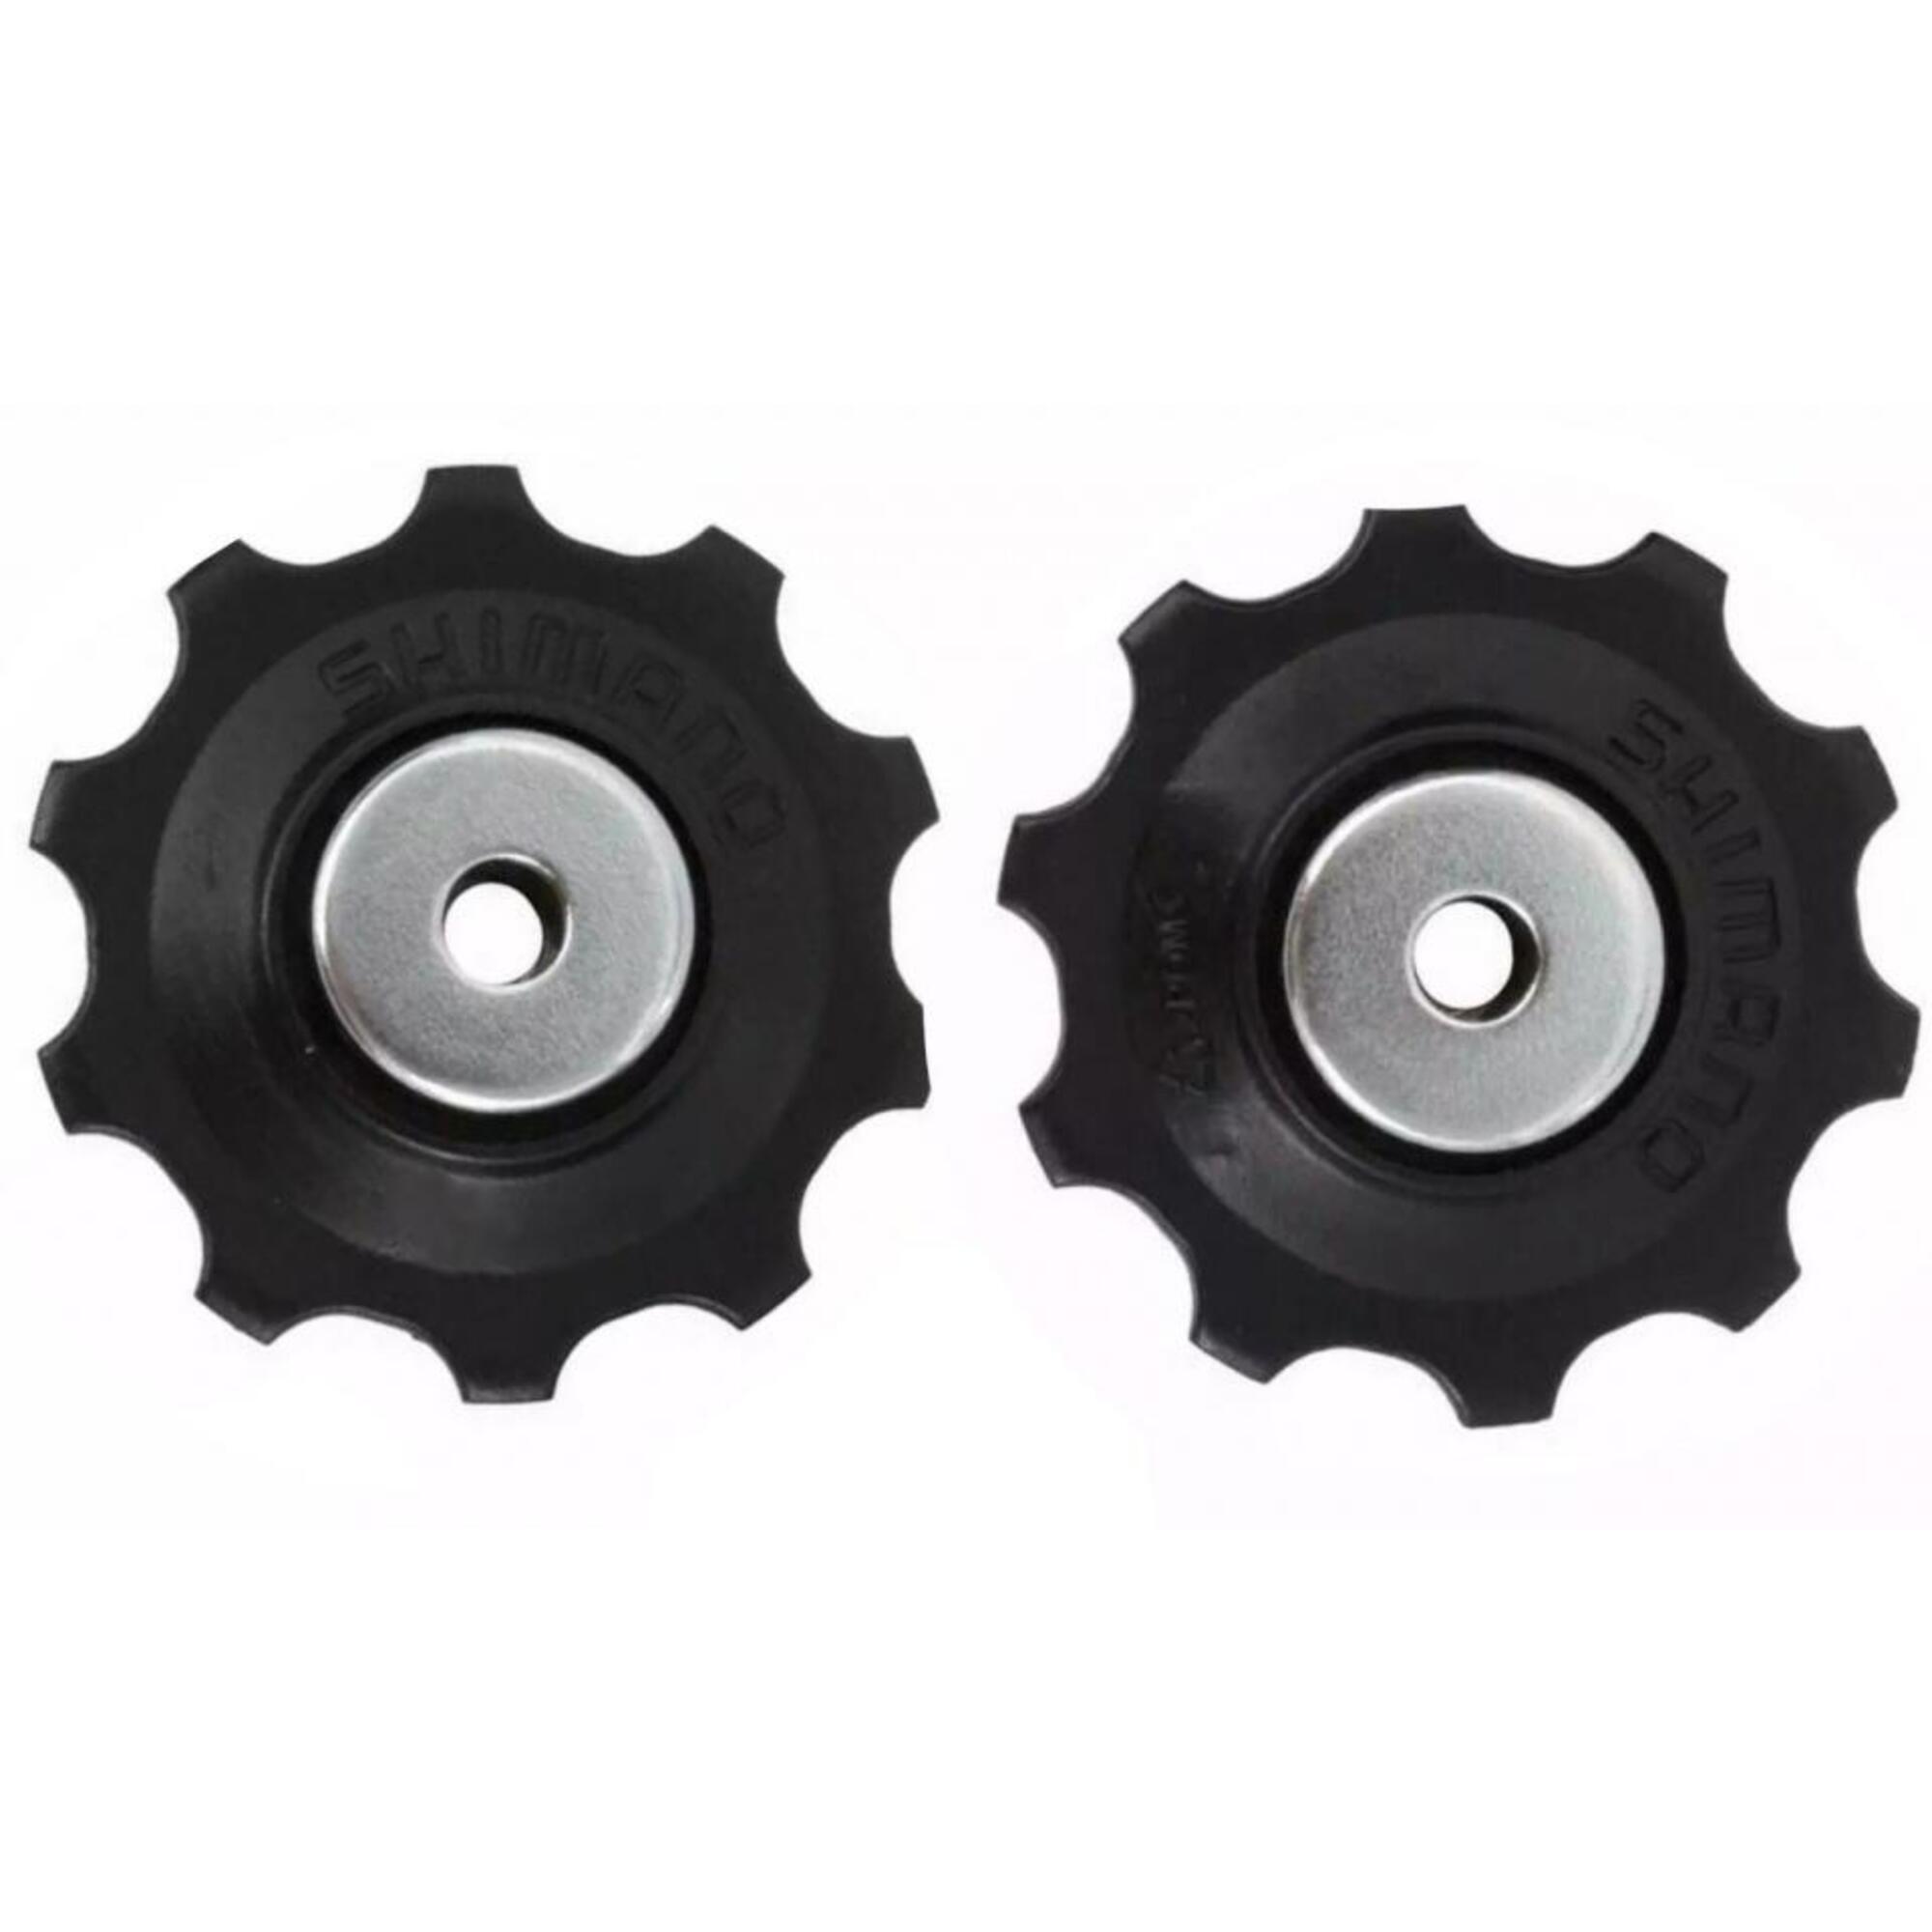 Shimano Jockey wheels 11T Deore, LX, SLX, 105, Tiagra RD-5700 4/5